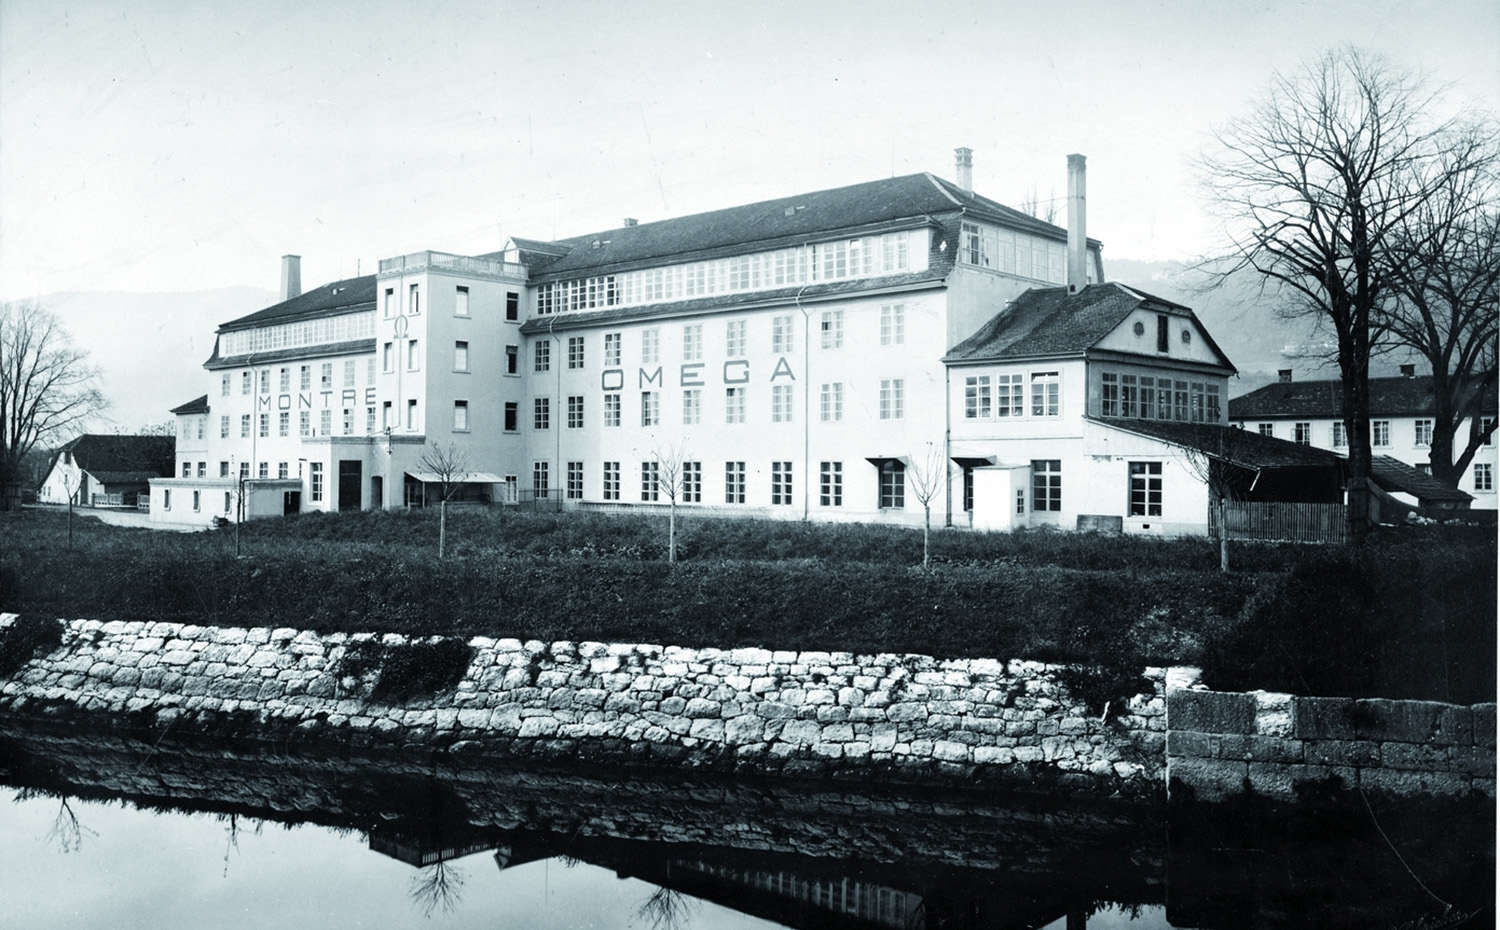 Omega lleva produciendo relojes en Bienne desde 1882. En la imagen, la antigua factoría de la marca en 1902